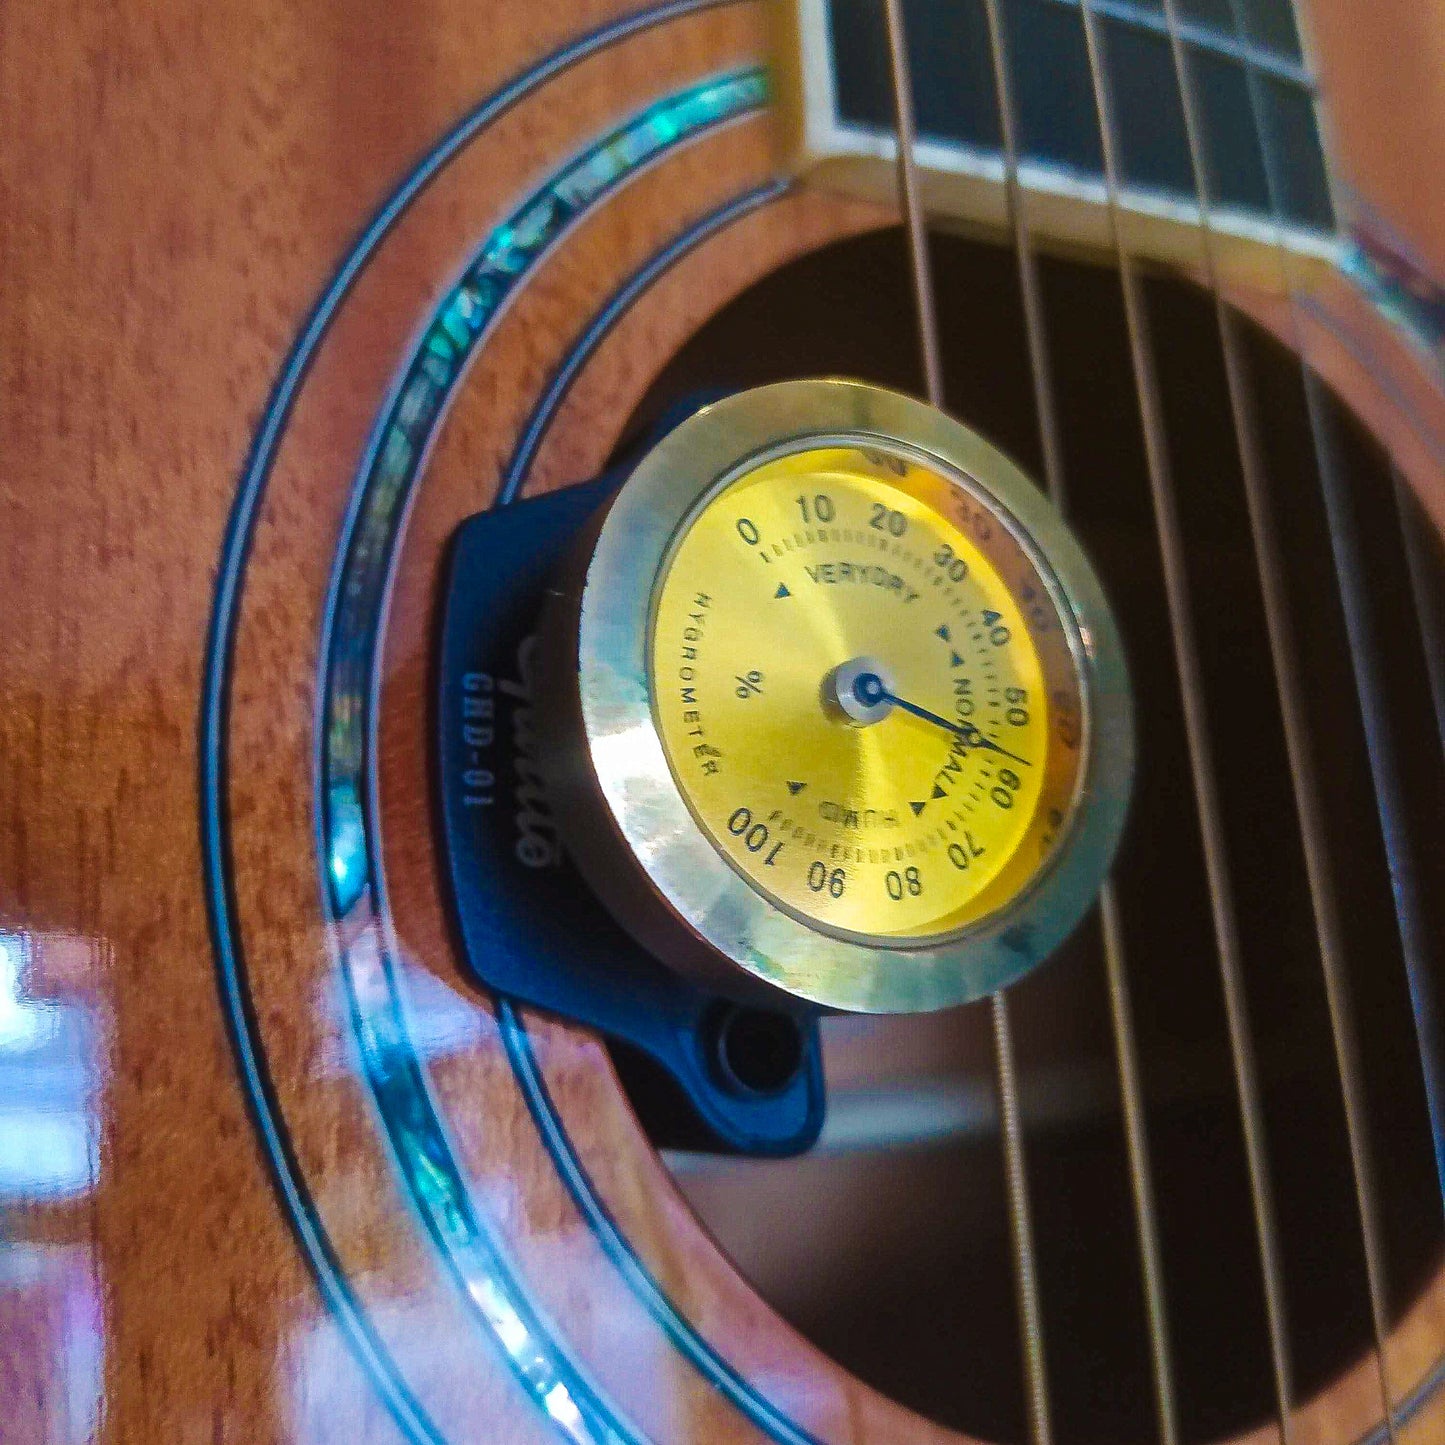 Humidifier Guitto untuk Gitar Akustik